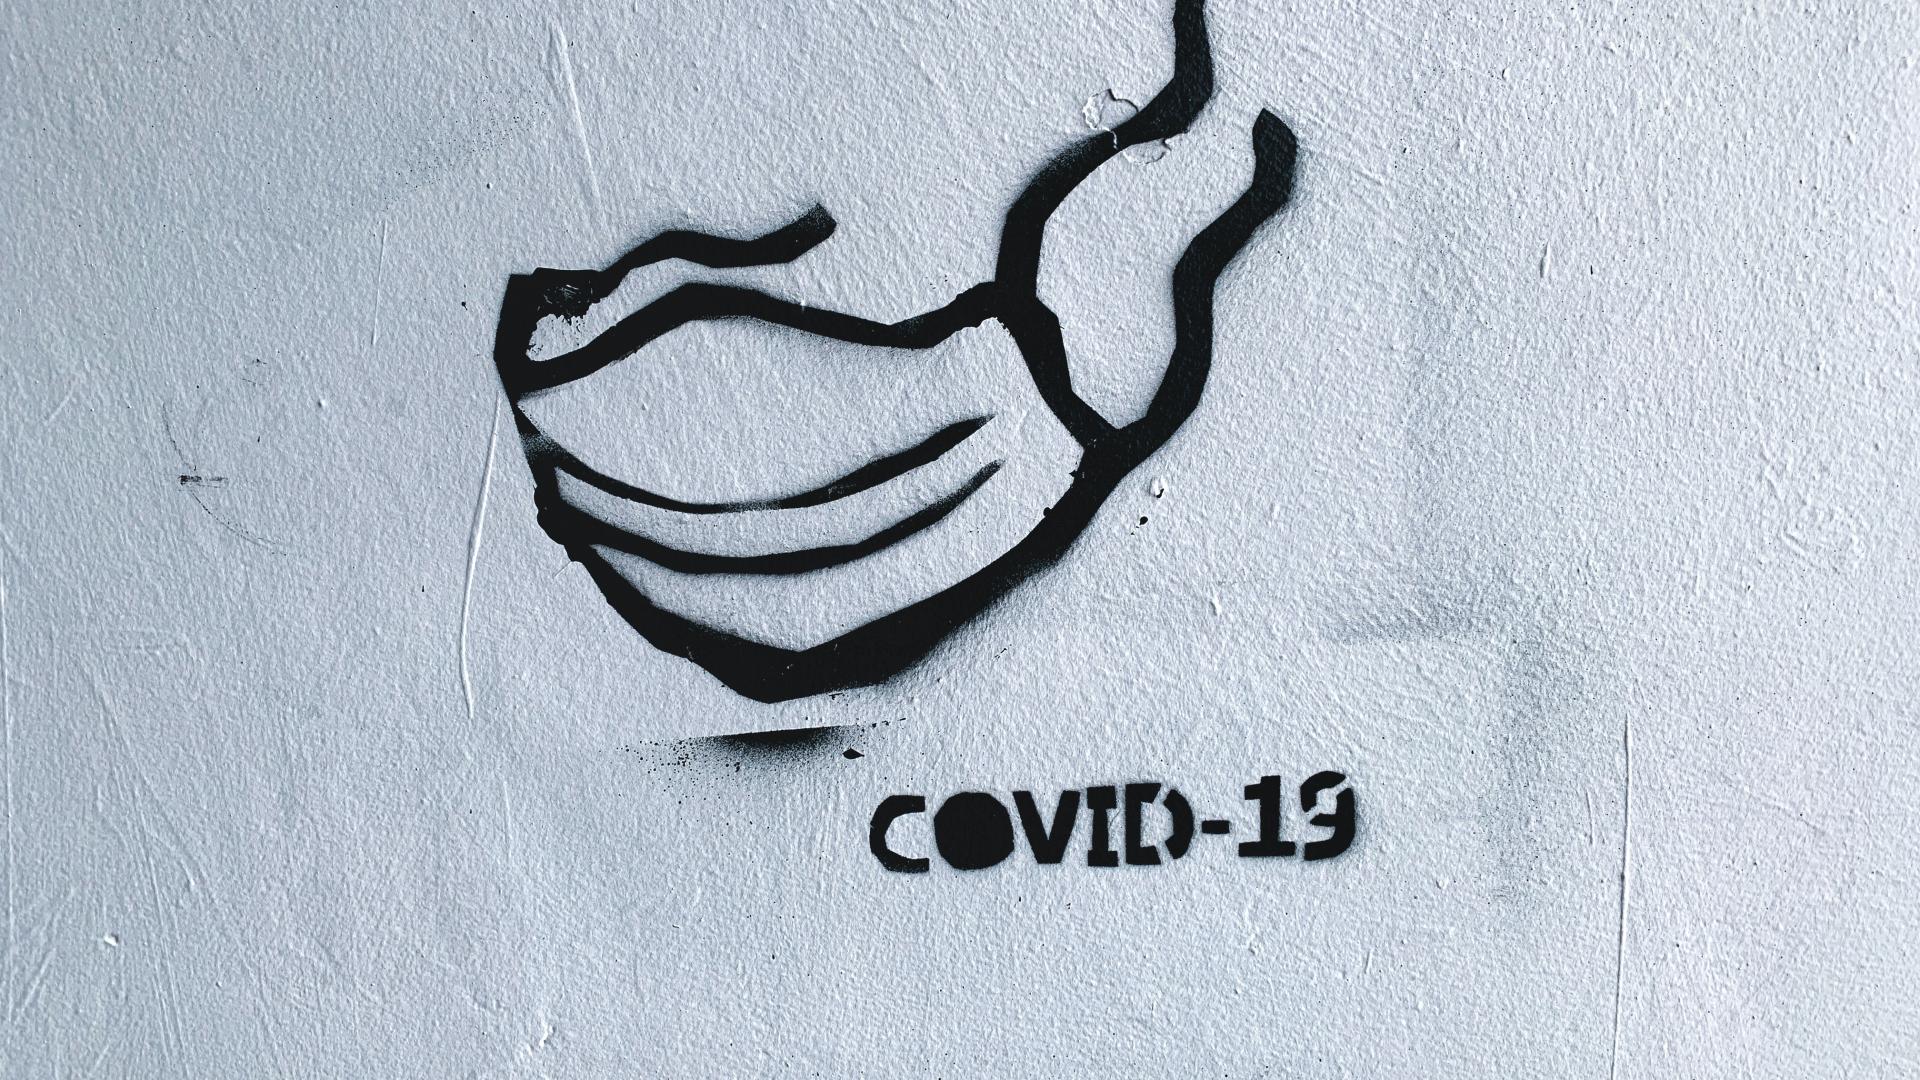 Covid graffiti 